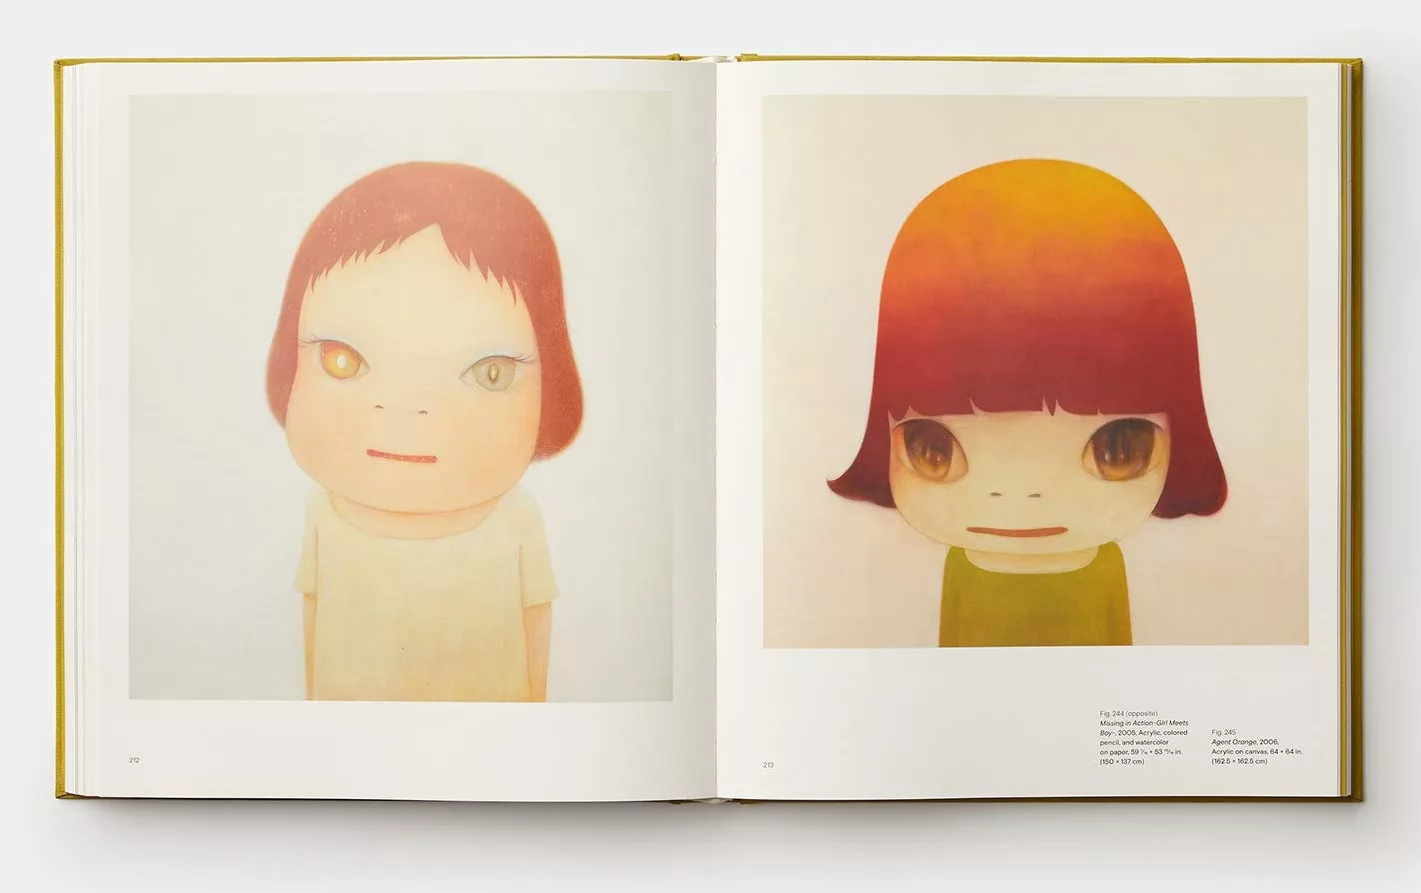 日本重量級當代藝術家 奈良美智 首度來台 必讀作品完整收錄 Yoshitomo Nara奈良美智三十年作品集 特價2999元